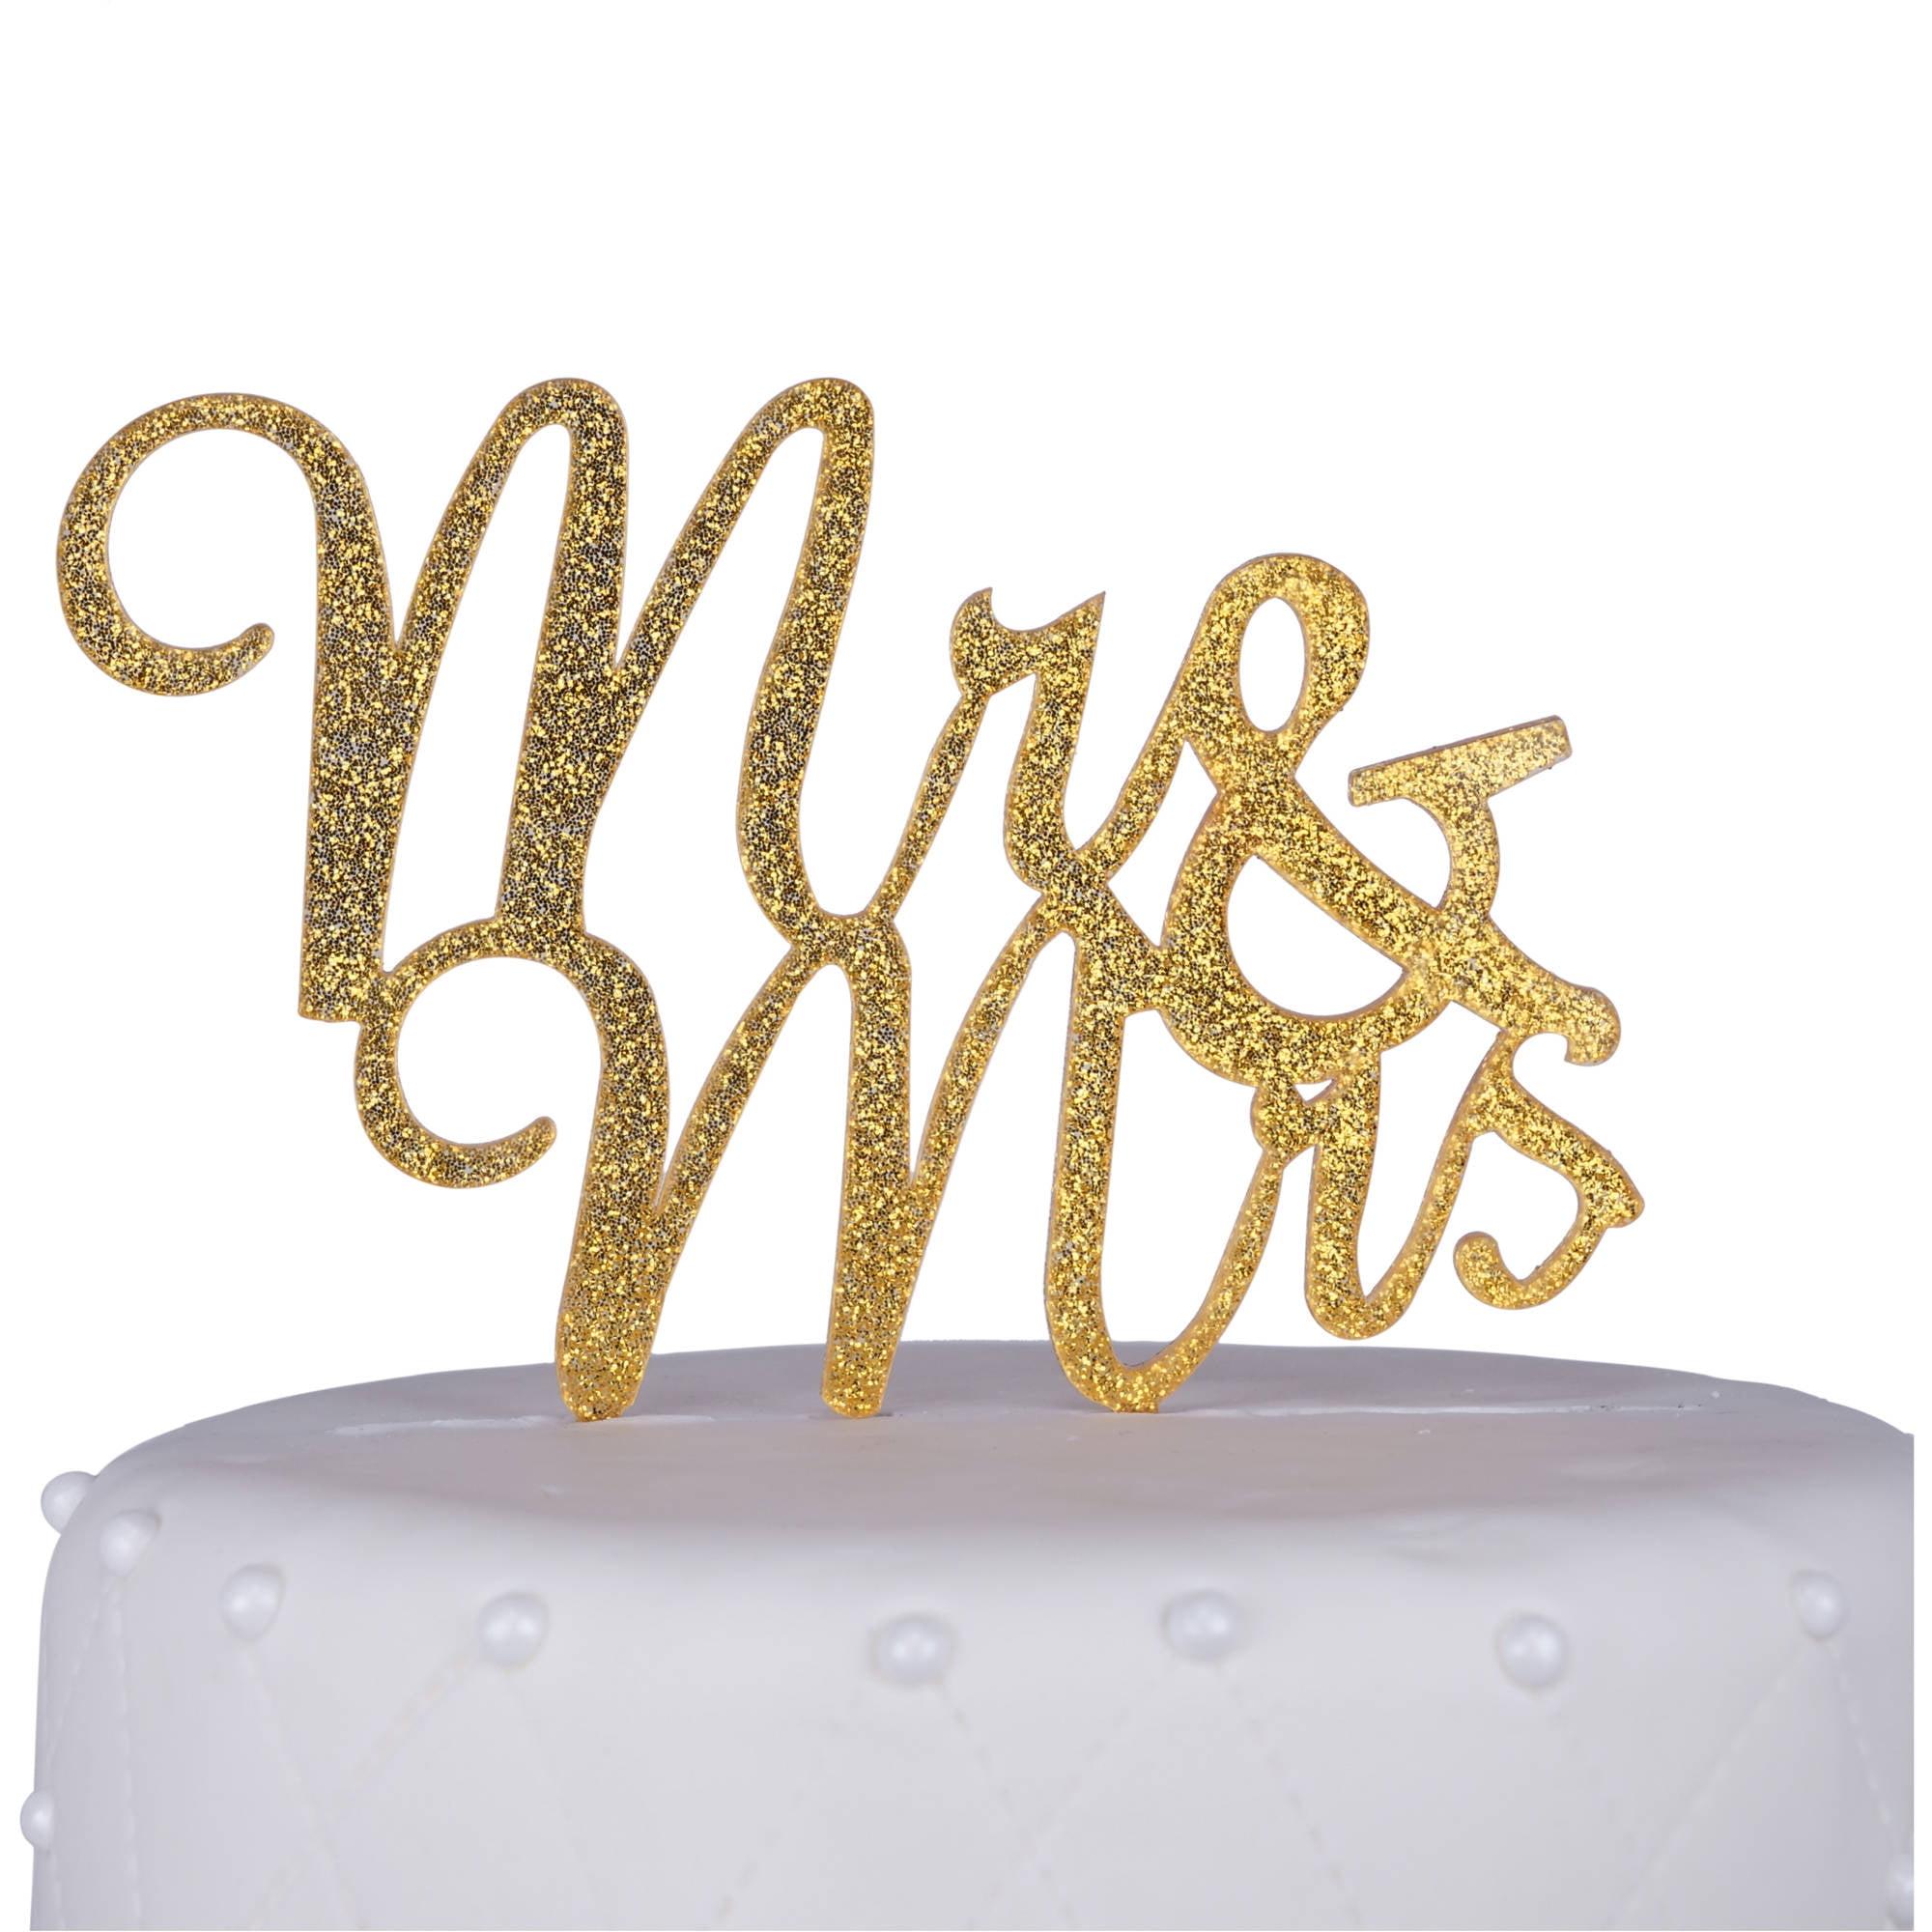 MR & MRS gold glitter wedding cake topper